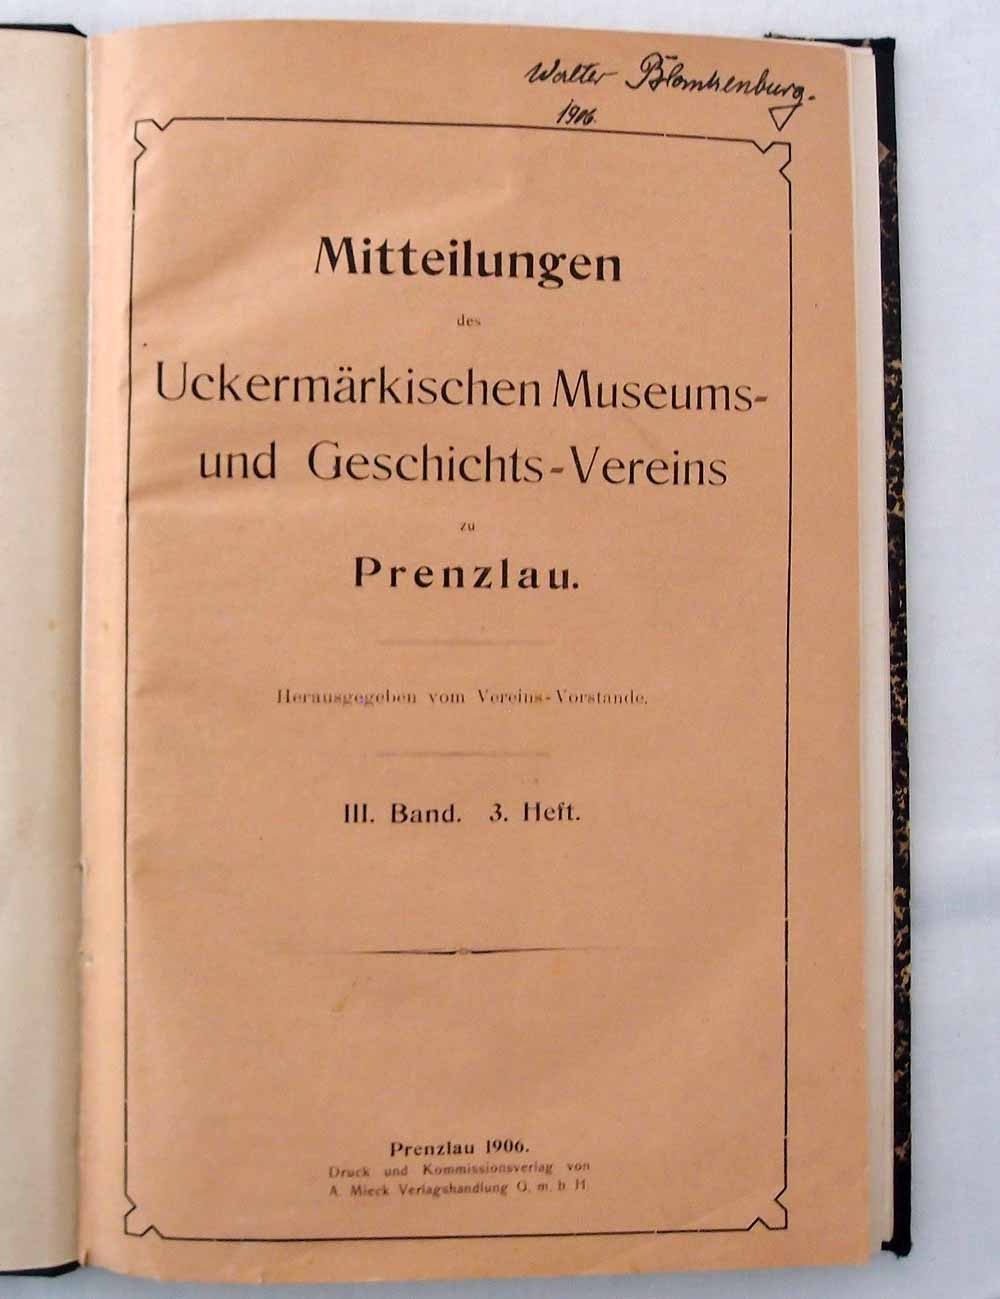 Mitteilungen des uckermärkischen Museums- und Geschichtsvereins 1906 (Museum für Stadtgeschichte Templin CC BY-NC-SA)